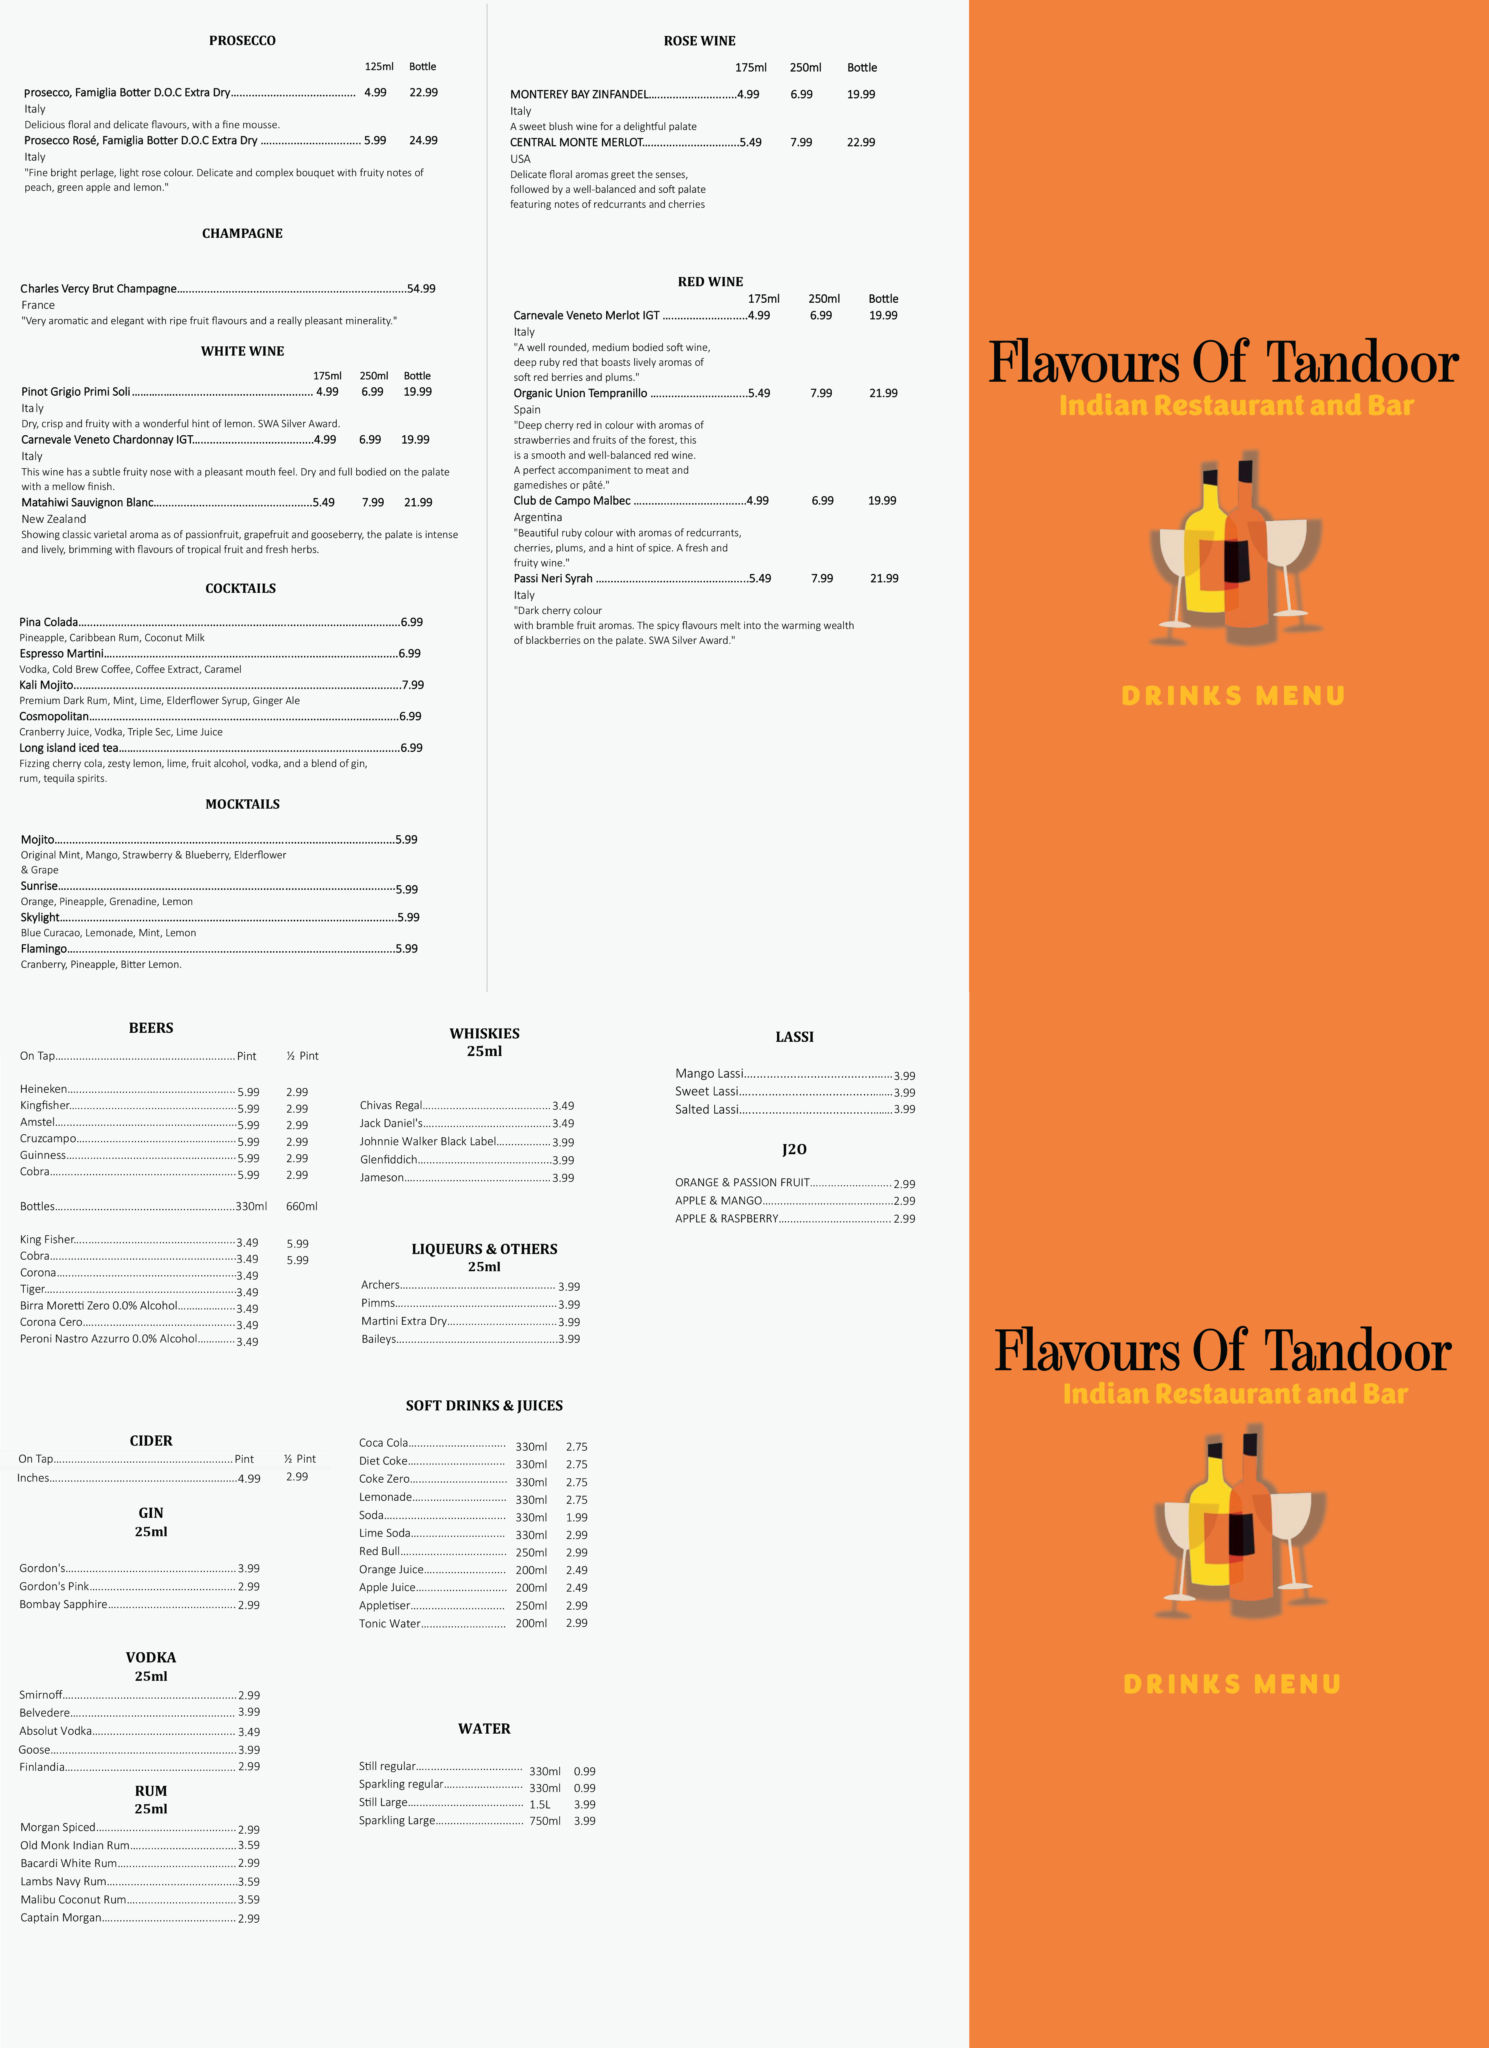 flavours of tandoor drinks menu